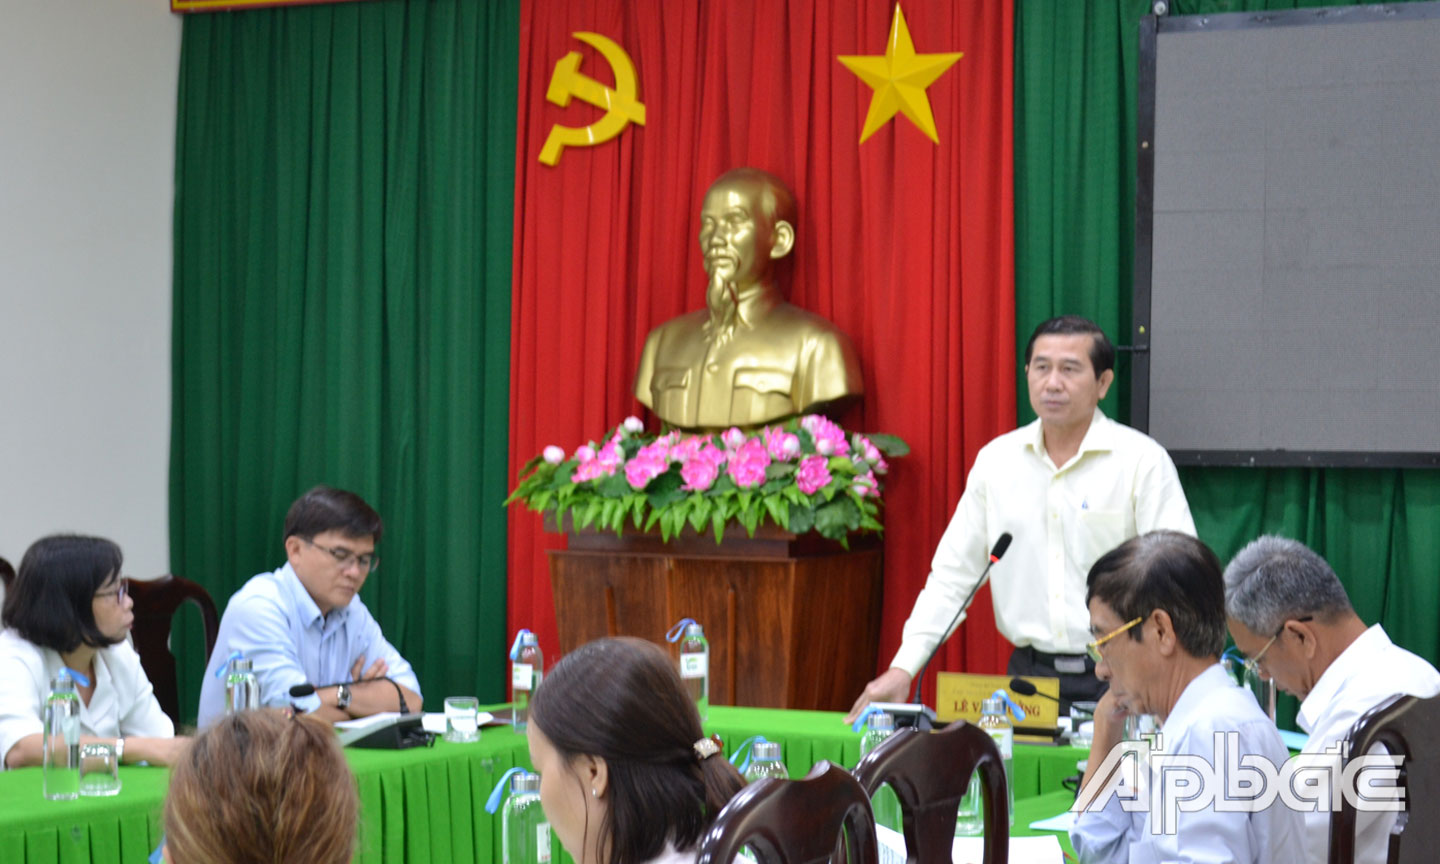 Đồng chí Lê Văn Hưởng kết luận tại buổi tiếp xúc và đối thoại với công dân.